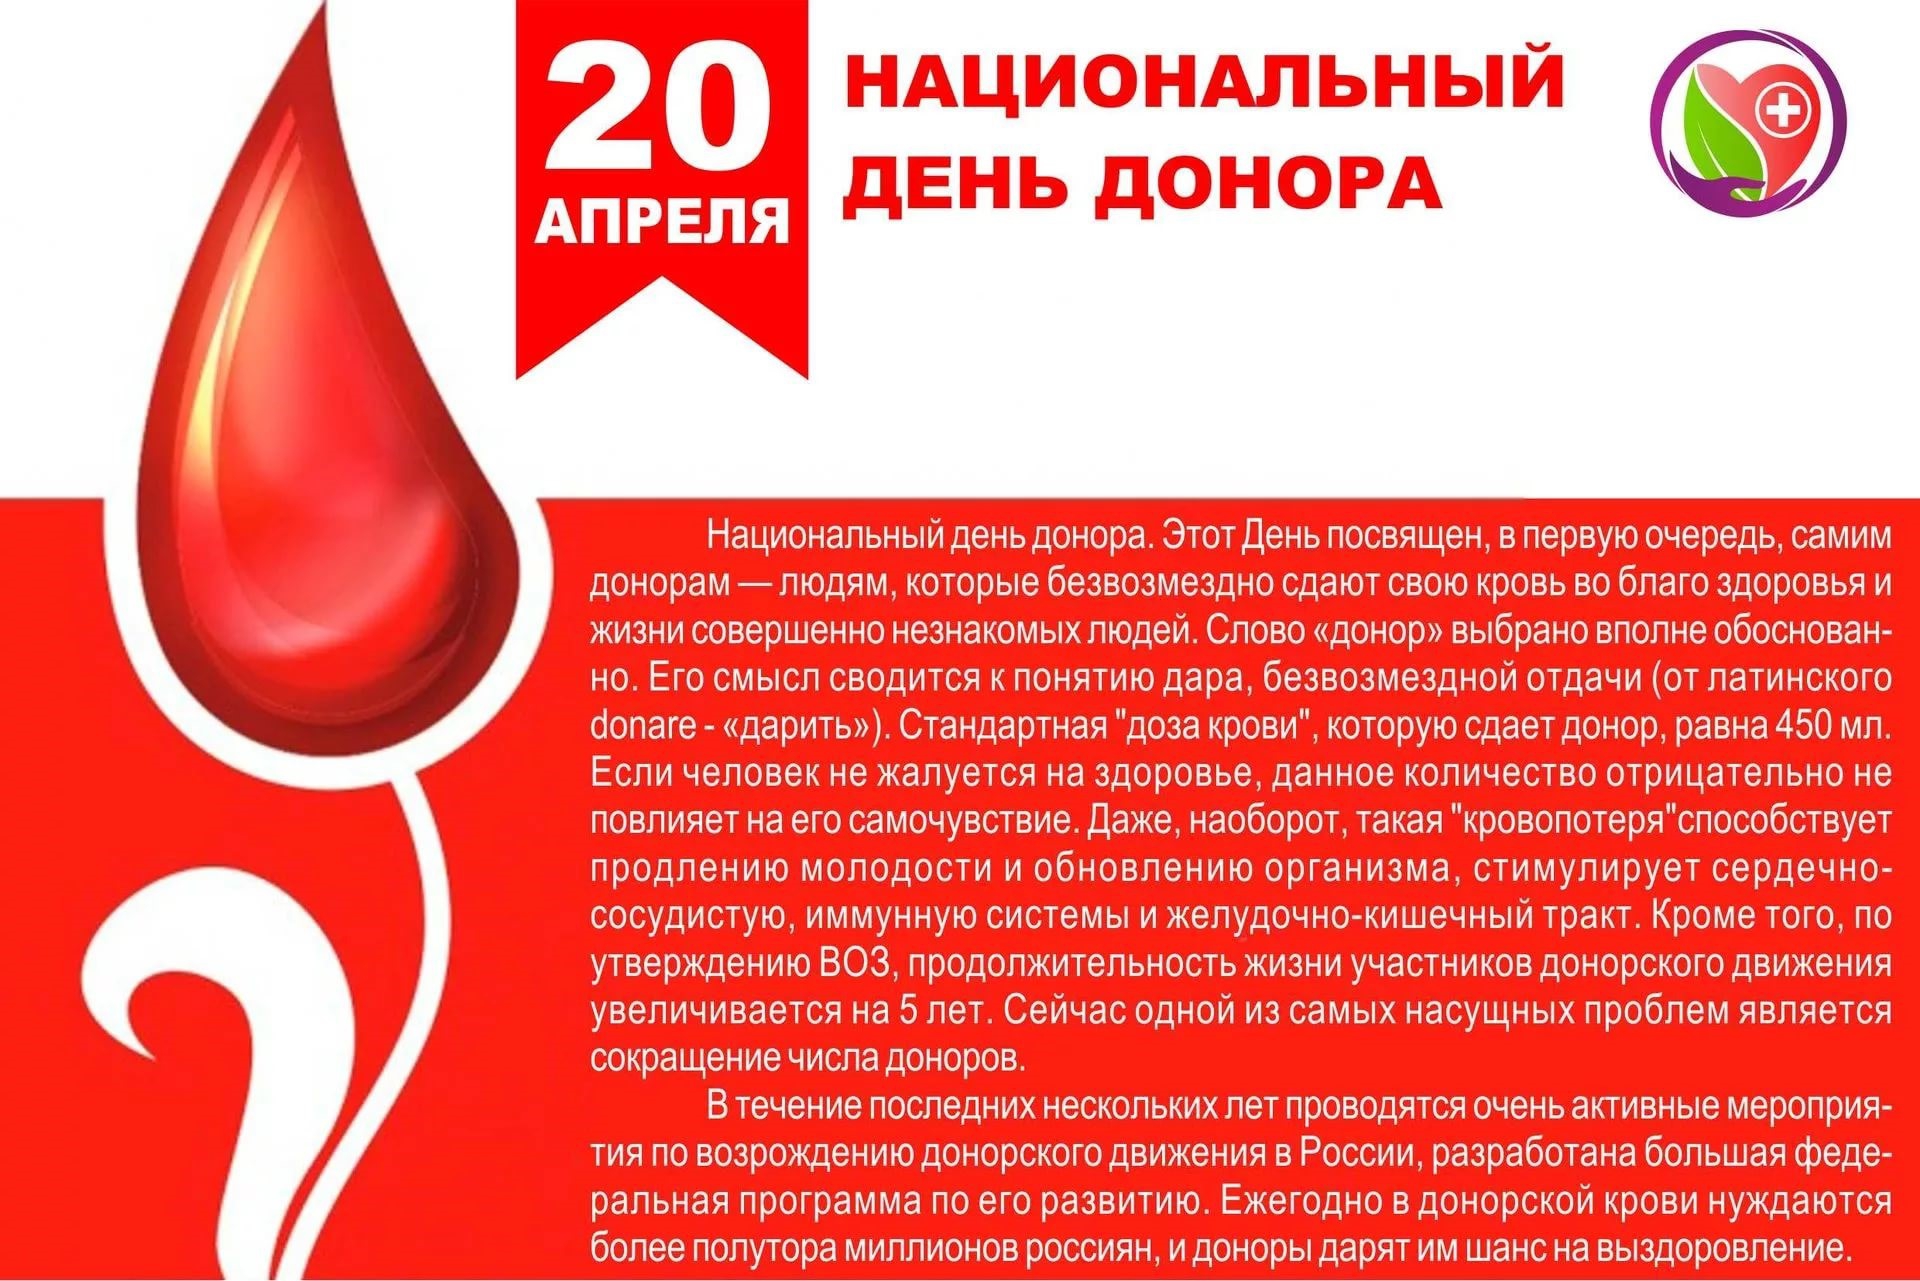 Донорство крови для здоровья. День донора. Национальный день донора. С днем донора поздравление. 20 Апреля национальный день донора в России.